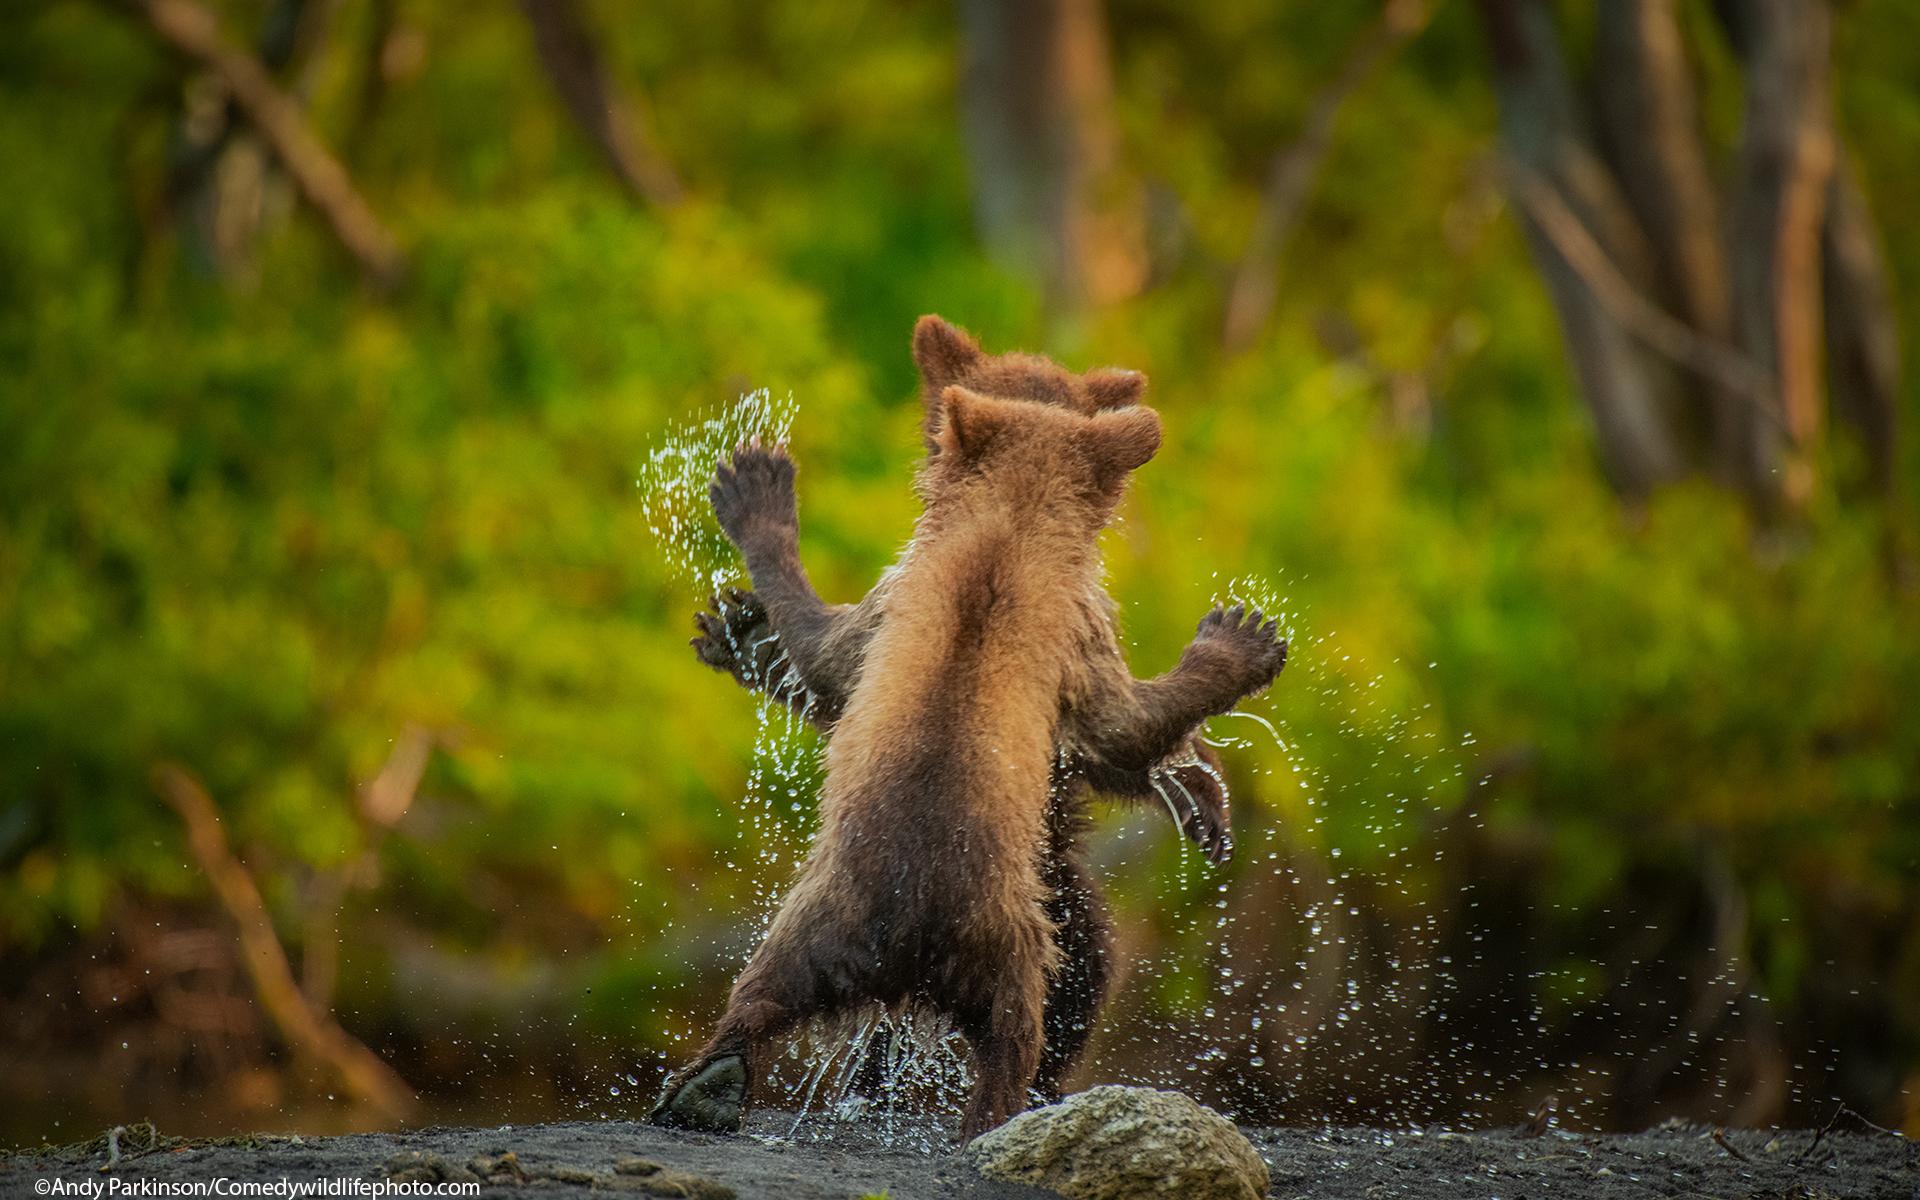 Bilden ”Let&apos;s dance” fick en särskild utmärkelse. Fotografens beskrivning av bilden lyder: Två björnungar ställer upp för en festlig lekkamp.